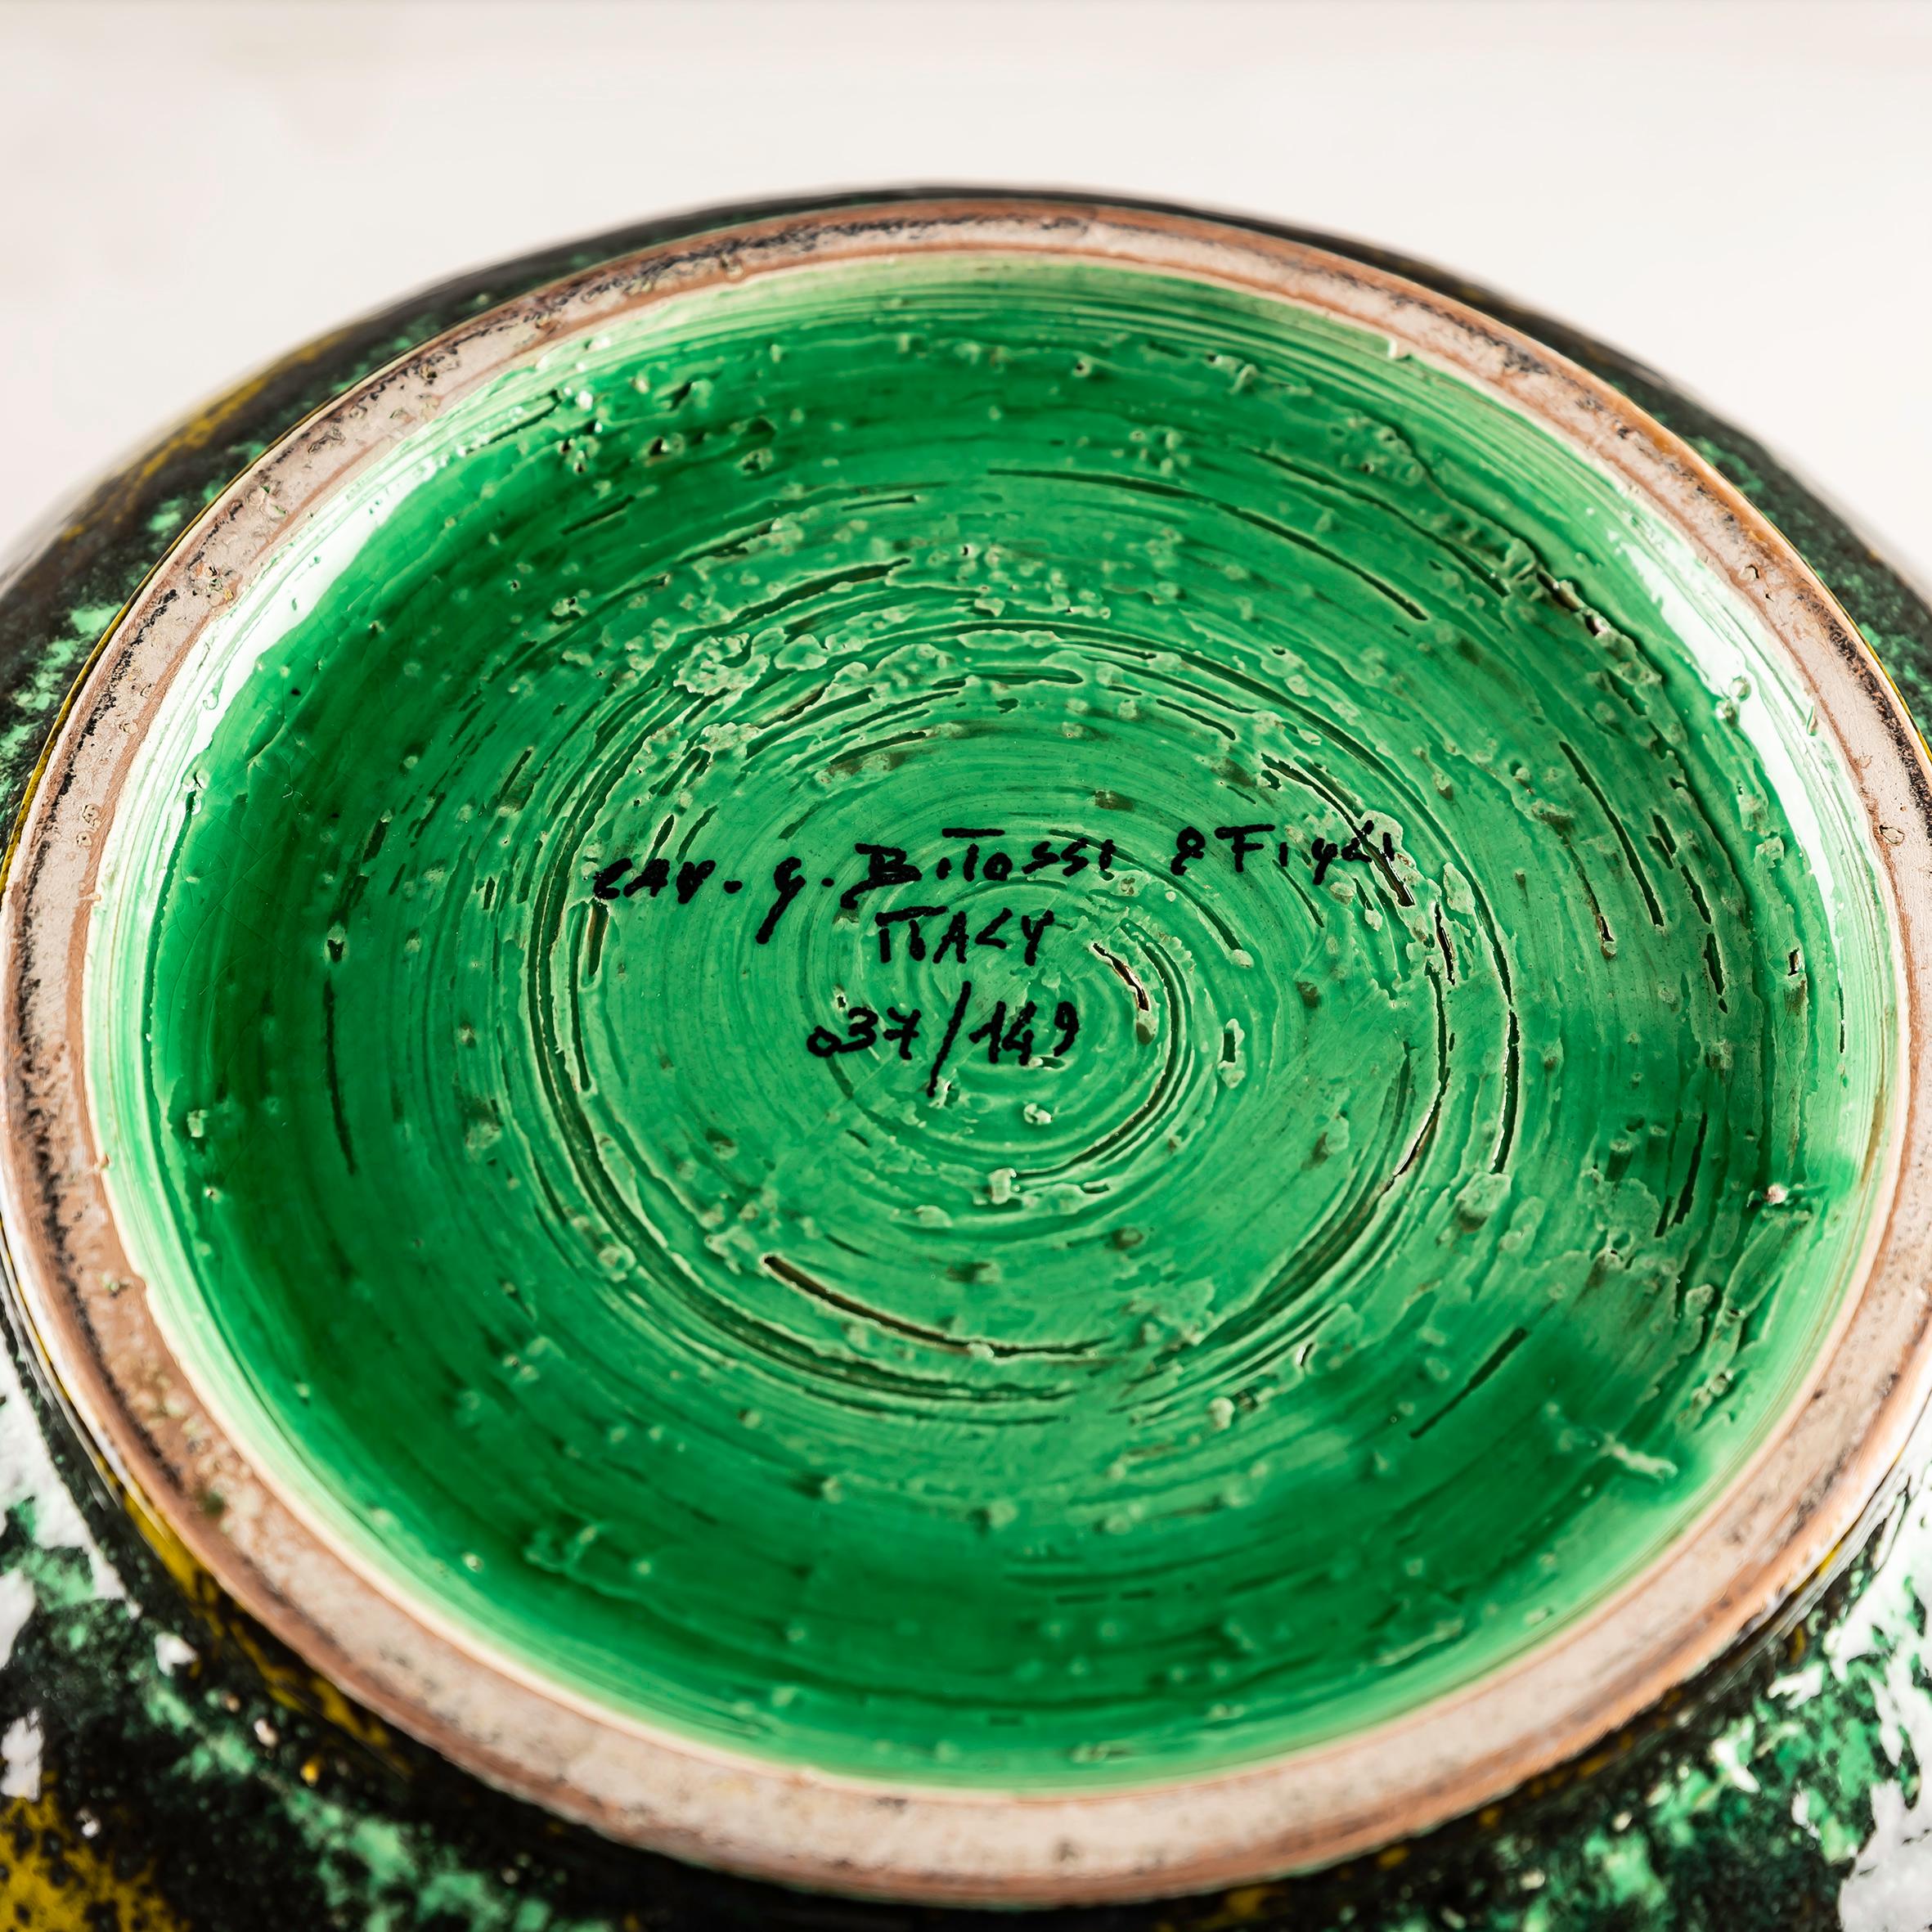 Vase von Aldo Londi für Bitossi Ceramiche, handgedreht mit Einschnitten auf rotem Ton. Diese handwerklich gefertigte Vase gehört zur Kollektion Rimini mit dem Dekor Via Veneto und ist mit einer olivgrünen und hellgrünen Halbglanzglasur versehen. Sie